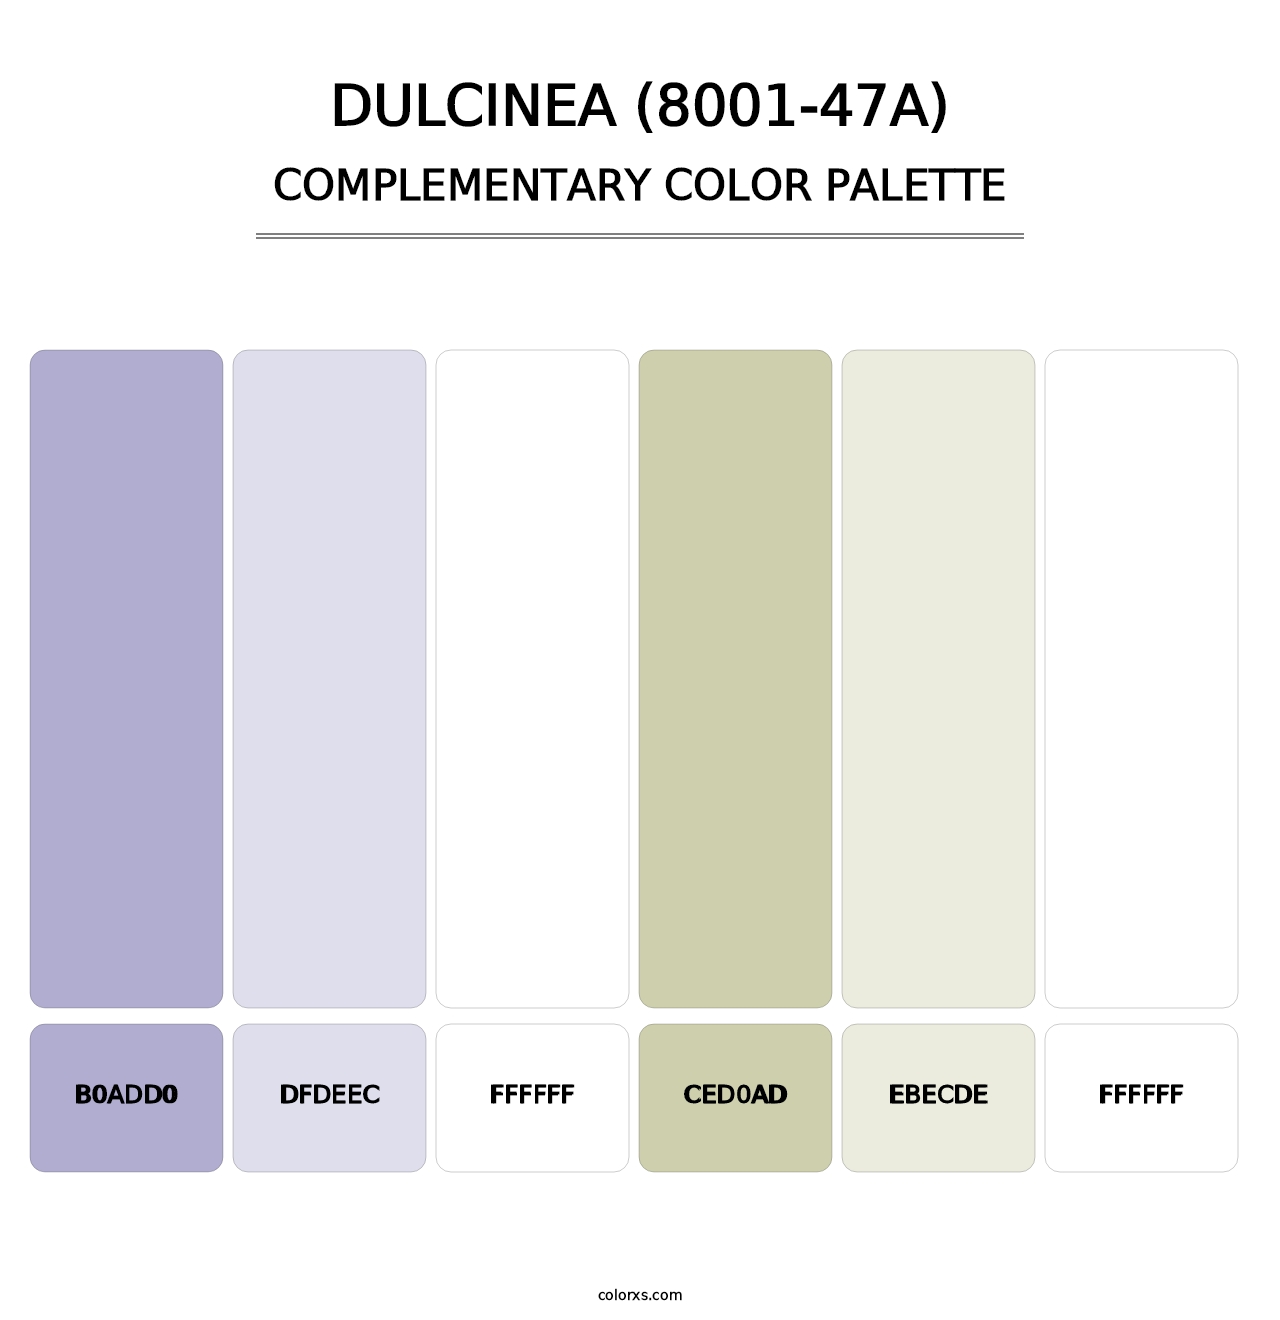 Dulcinea (8001-47A) - Complementary Color Palette